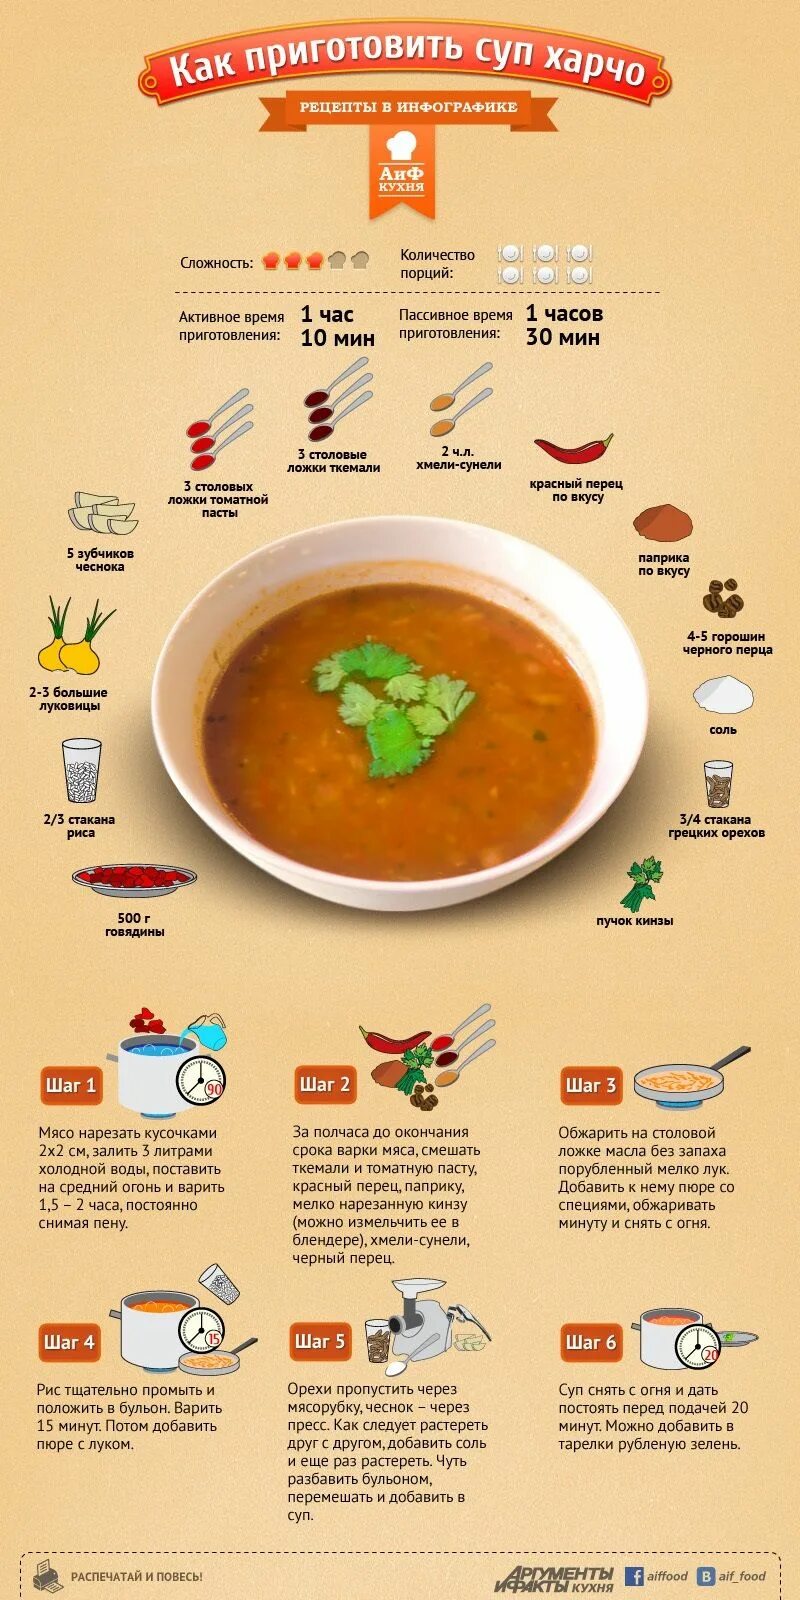 Схема приготовления супа харчо. Рецептура супа харчо. Рецепты в картинках. Инфографика суп.